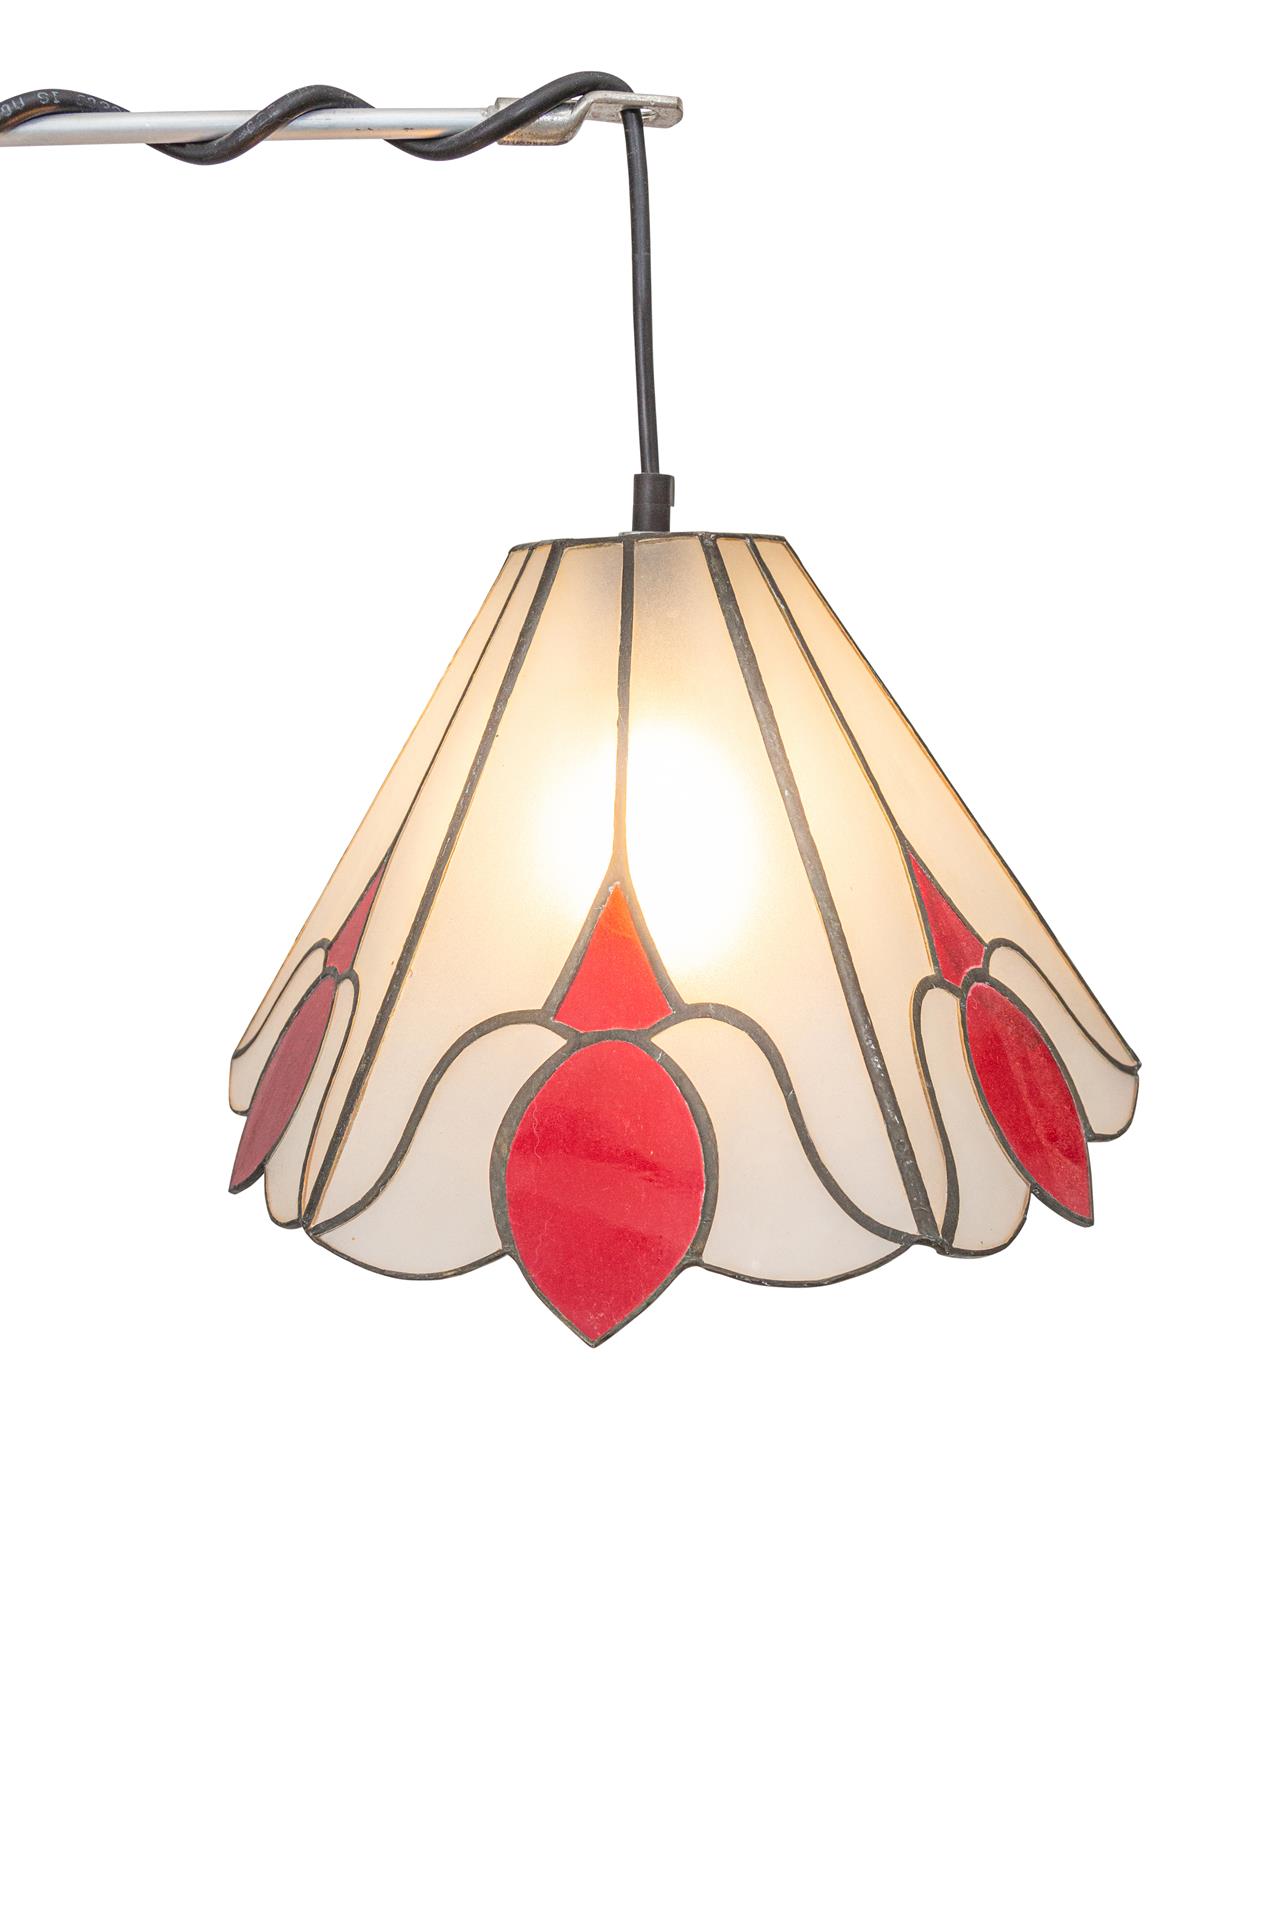 מנורת רצפה – דגם: אדום